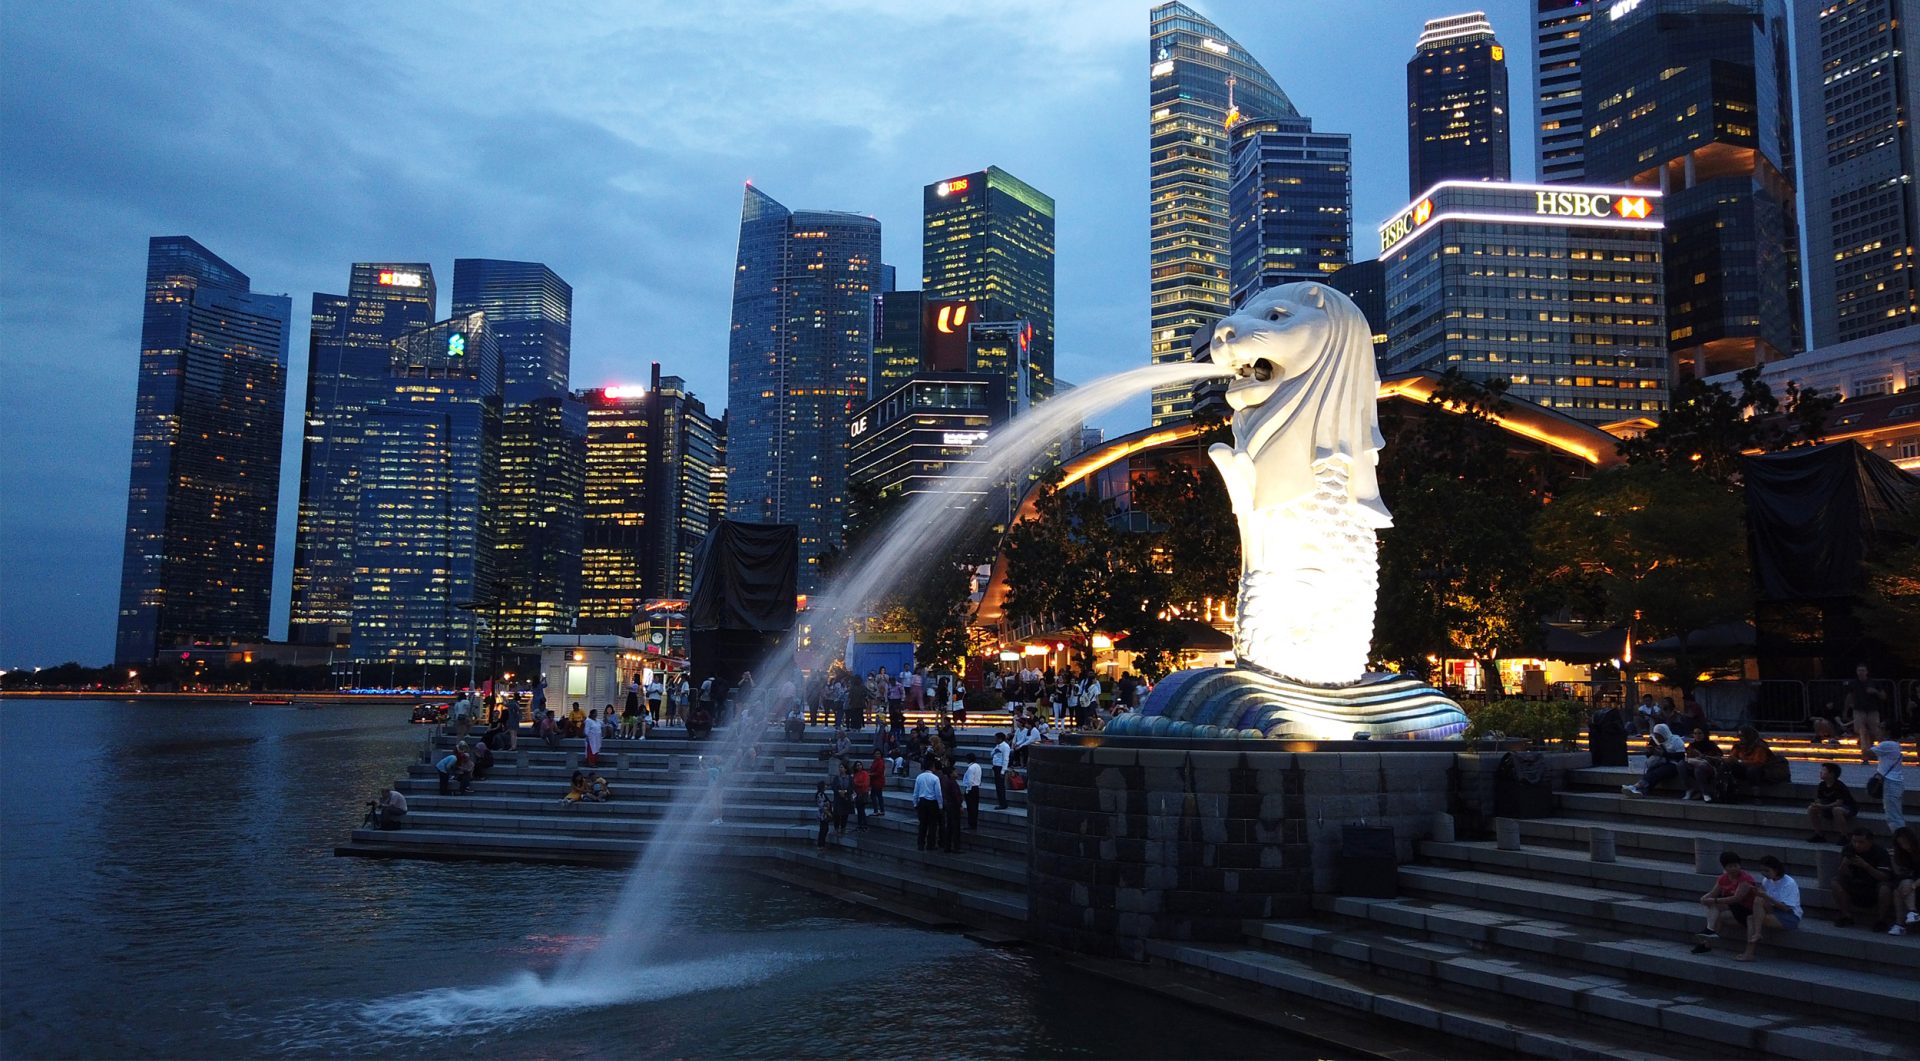 Singapur - nowoczesne miasto Lwa